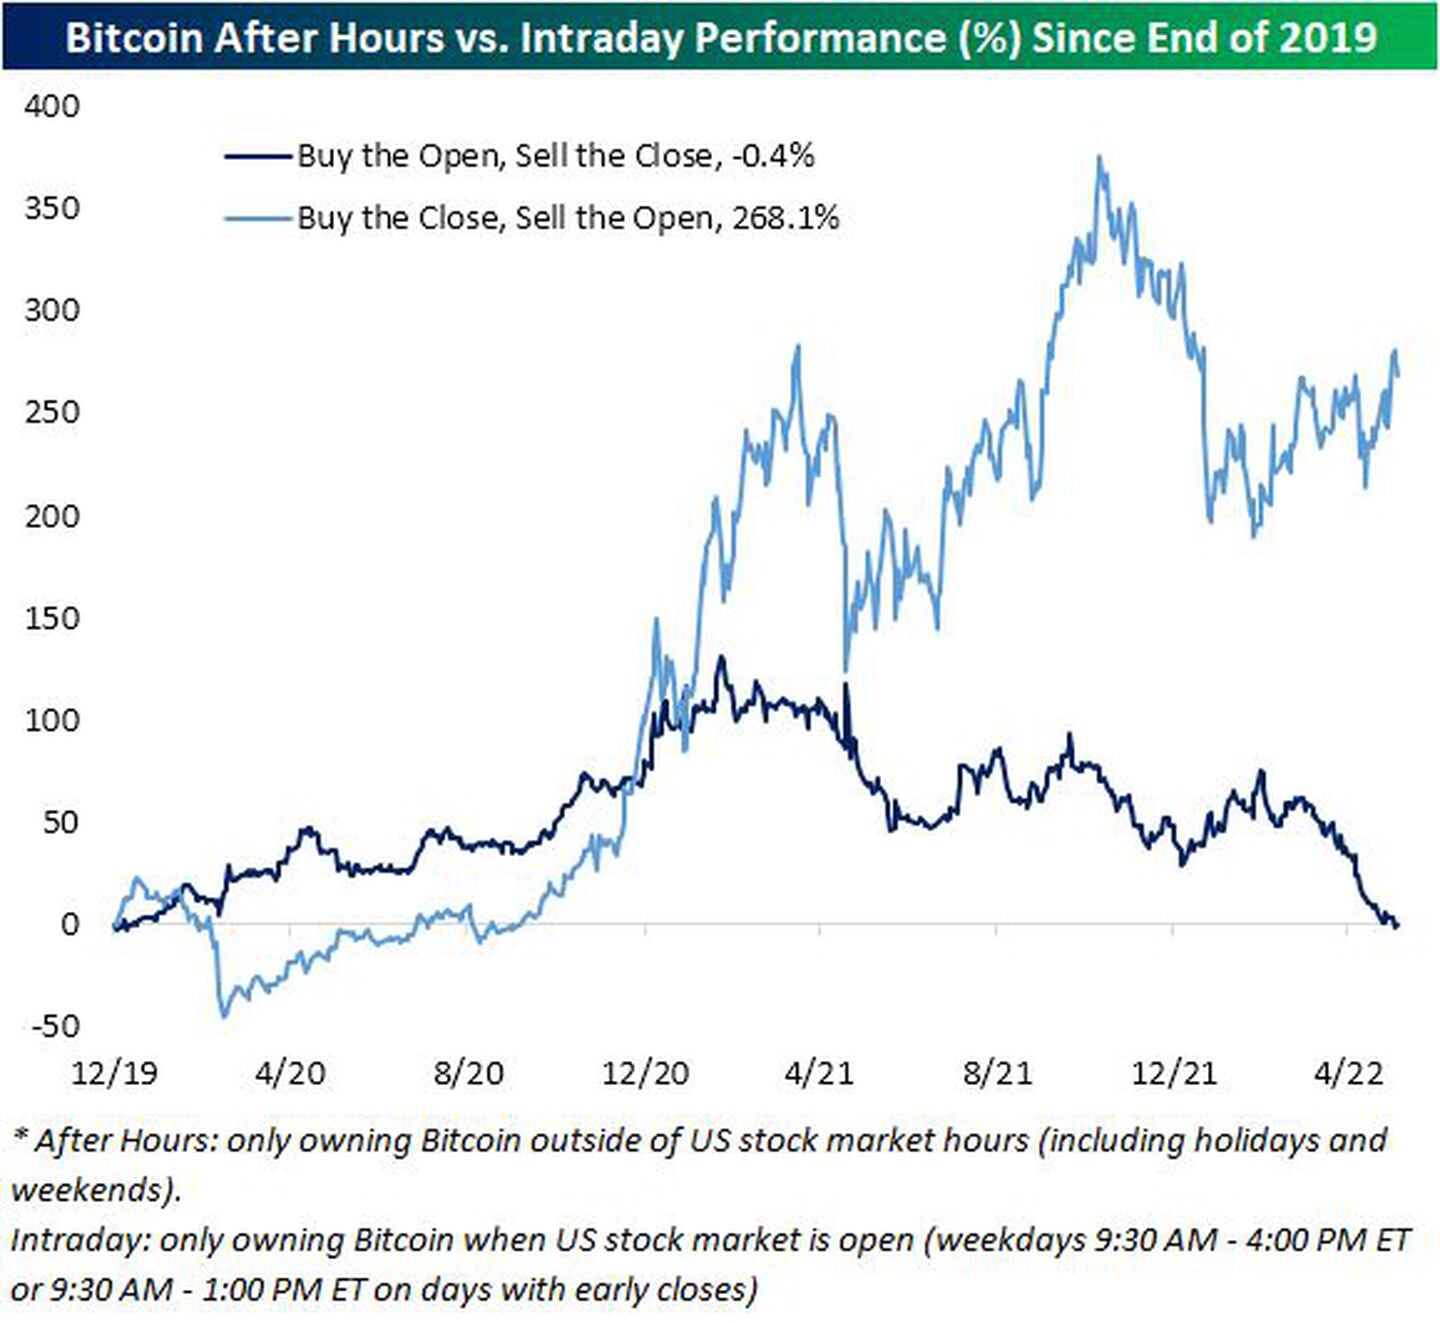 Rendimiento del Bitcoin After hours frente al intradía (%) desde finales de 2019 
Azul oscuro: Comprar la apertura, vender el cierre, -0,4%.
Azul claro: Comprar el cierre, vender la apertura, 268,2%.
*After Hours: sólo poseer bitcoin fuera del horario de la bolsa de EEUU (incluyendo festivos y fines de semana). 
Intradía: sólo poseer Bitcoin cuando el mercado de valores de EE.UU. está abierto (días laborables de 9:30 a.m. a 4:00 p.m. o de 9:30 a.m. a 1:00 p.m. ET en días con cierre anticipado)dfd